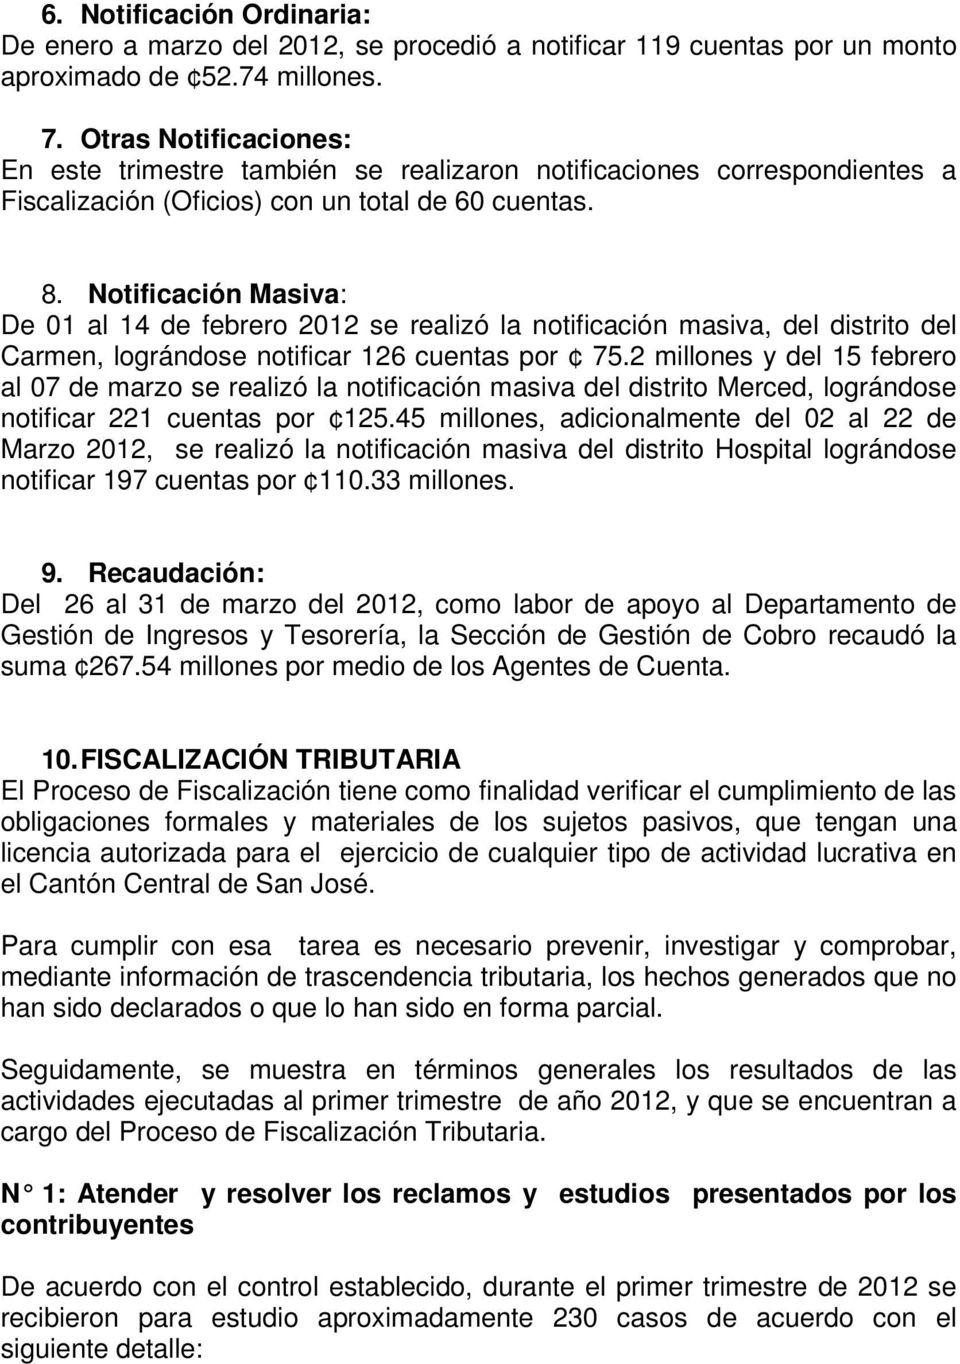 Notificación Masiva: De 01 al 14 de febrero 2012 se realizó la notificación masiva, del distrito del Carmen, lográndose notificar 126 cuentas por 75.